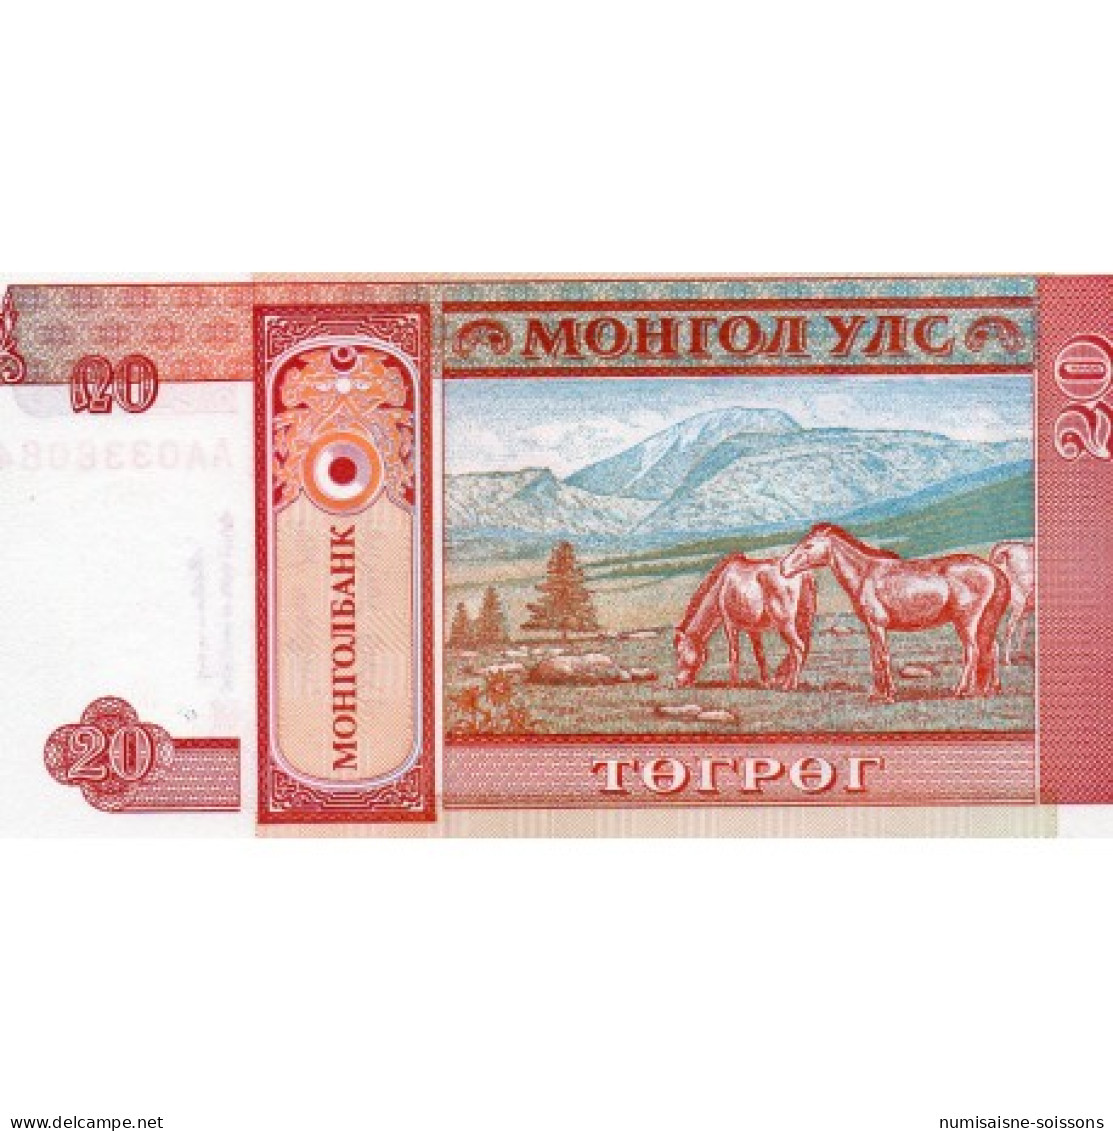 MONGOLIE - PICK 55 - 20 TUGRIK - NON DATÉ (1993) - Mongolia